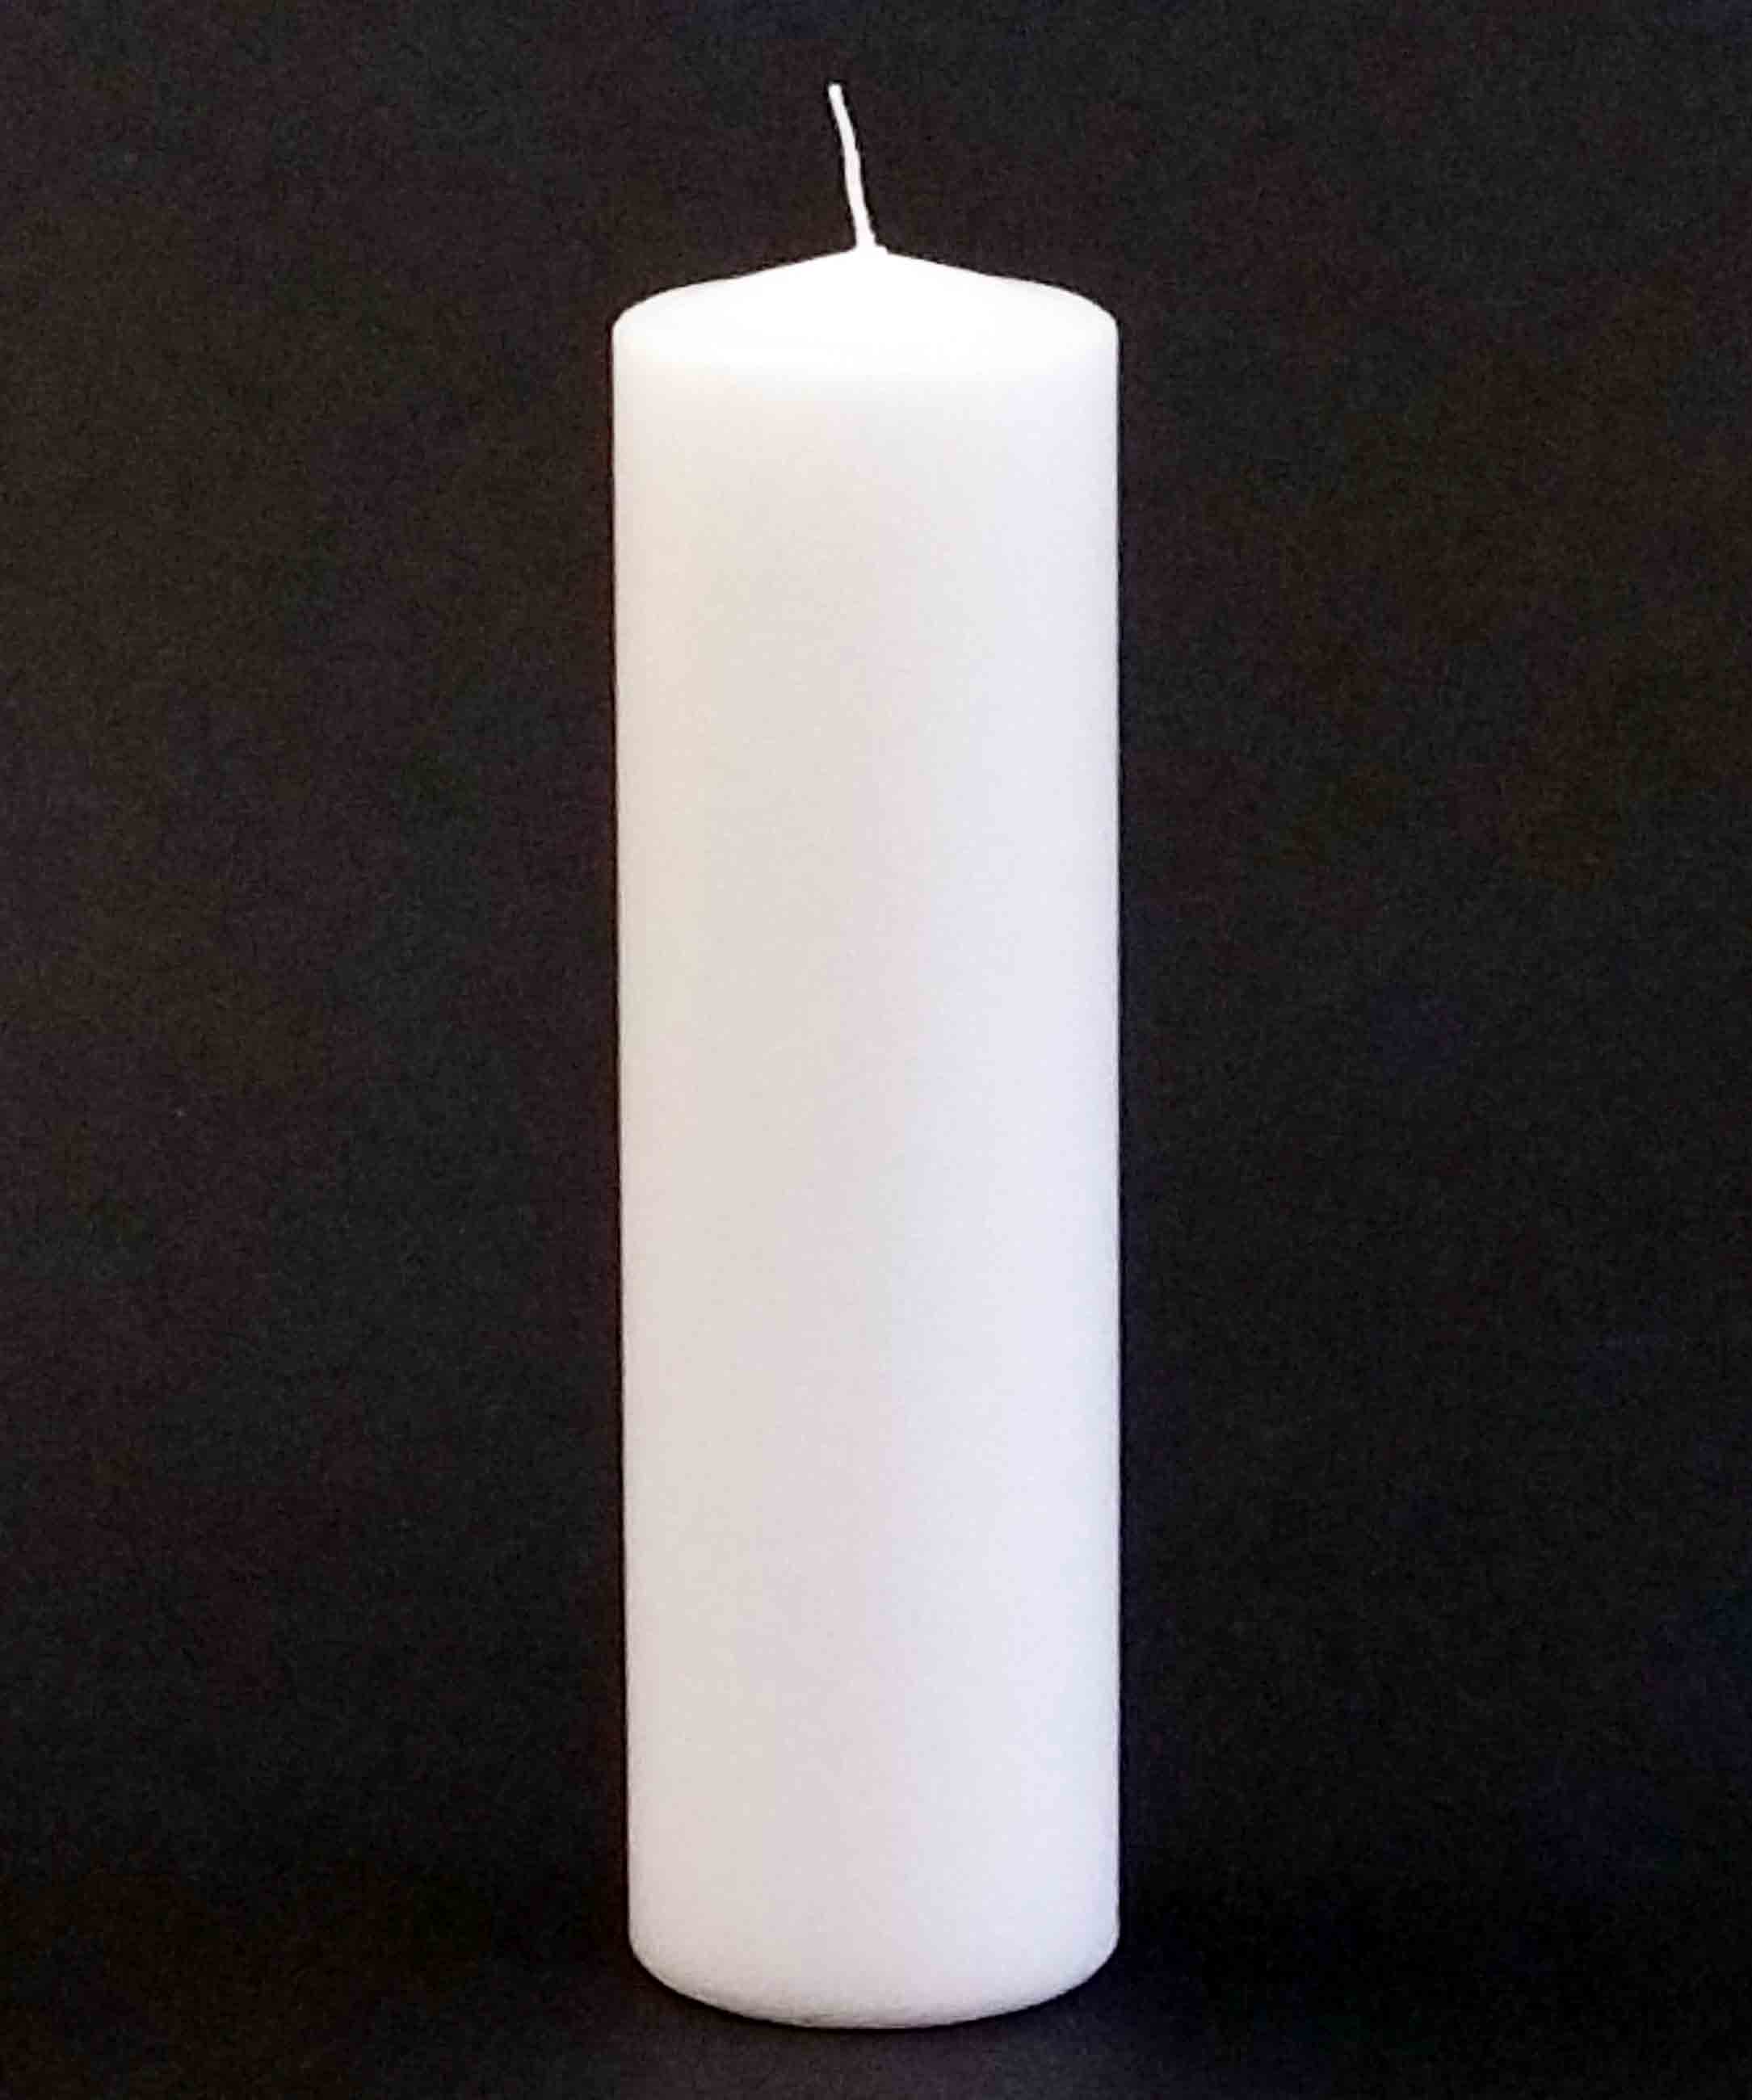 PCU10 - 10" Pillar Candle - 6.90 ea, 6.55/12